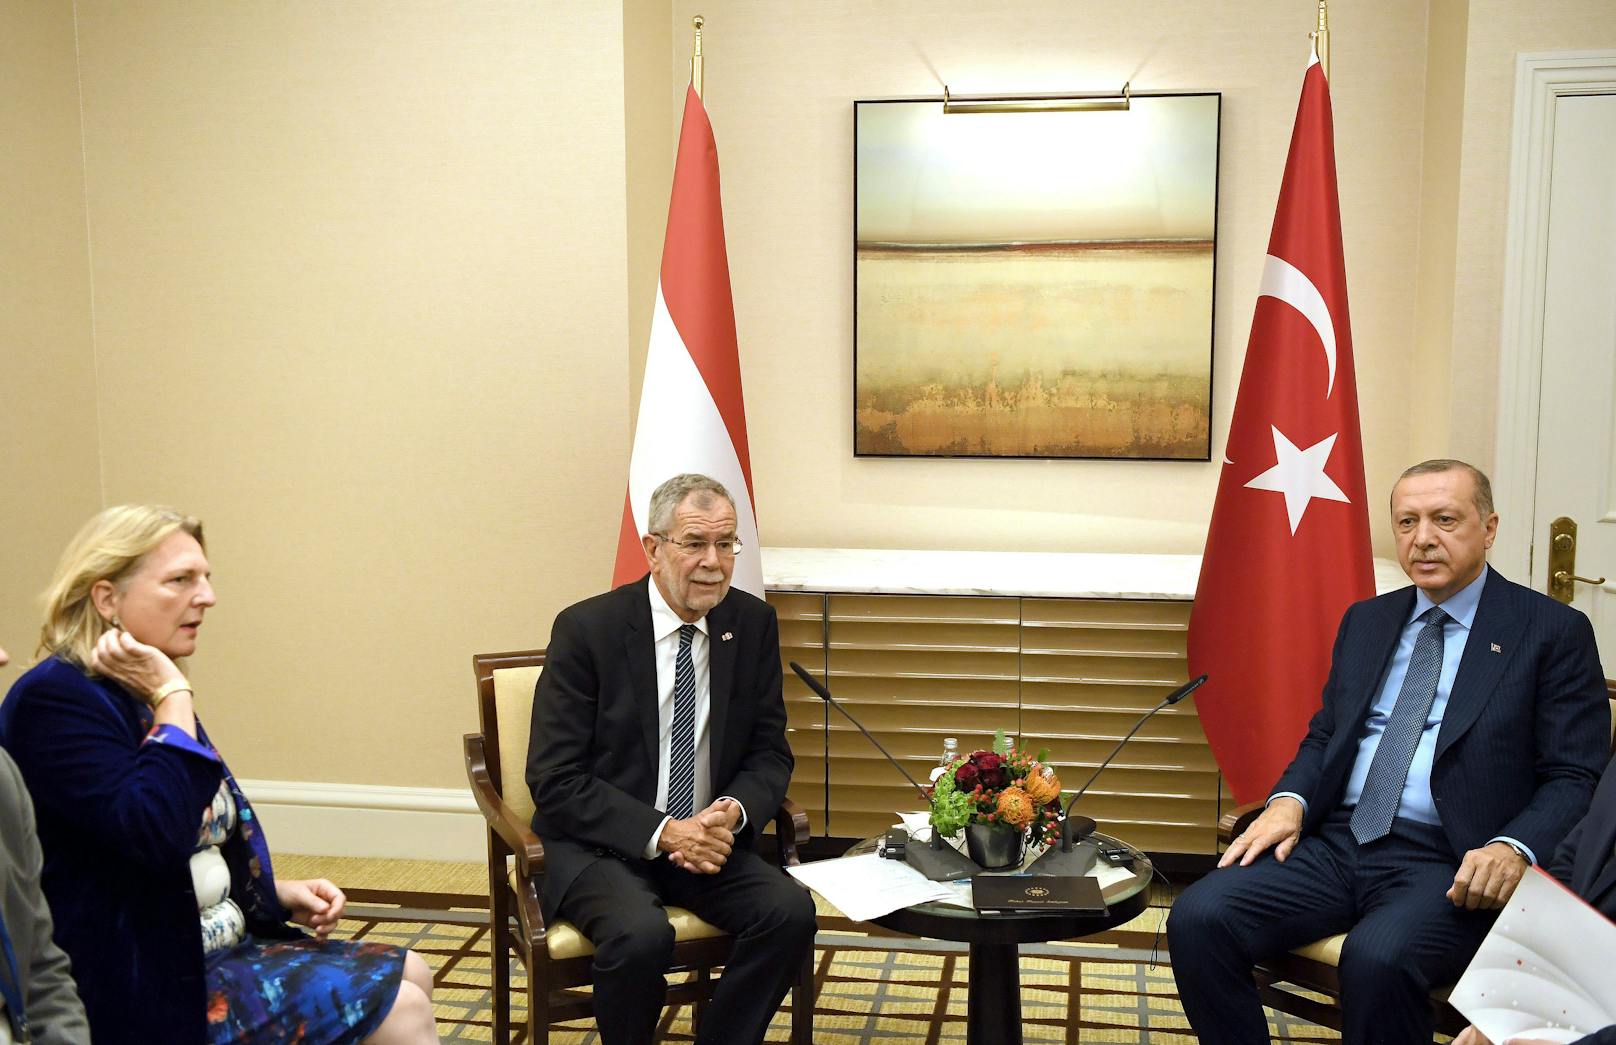 Van der Bellen trifft in NYC Türken-Präsident Erdoğan